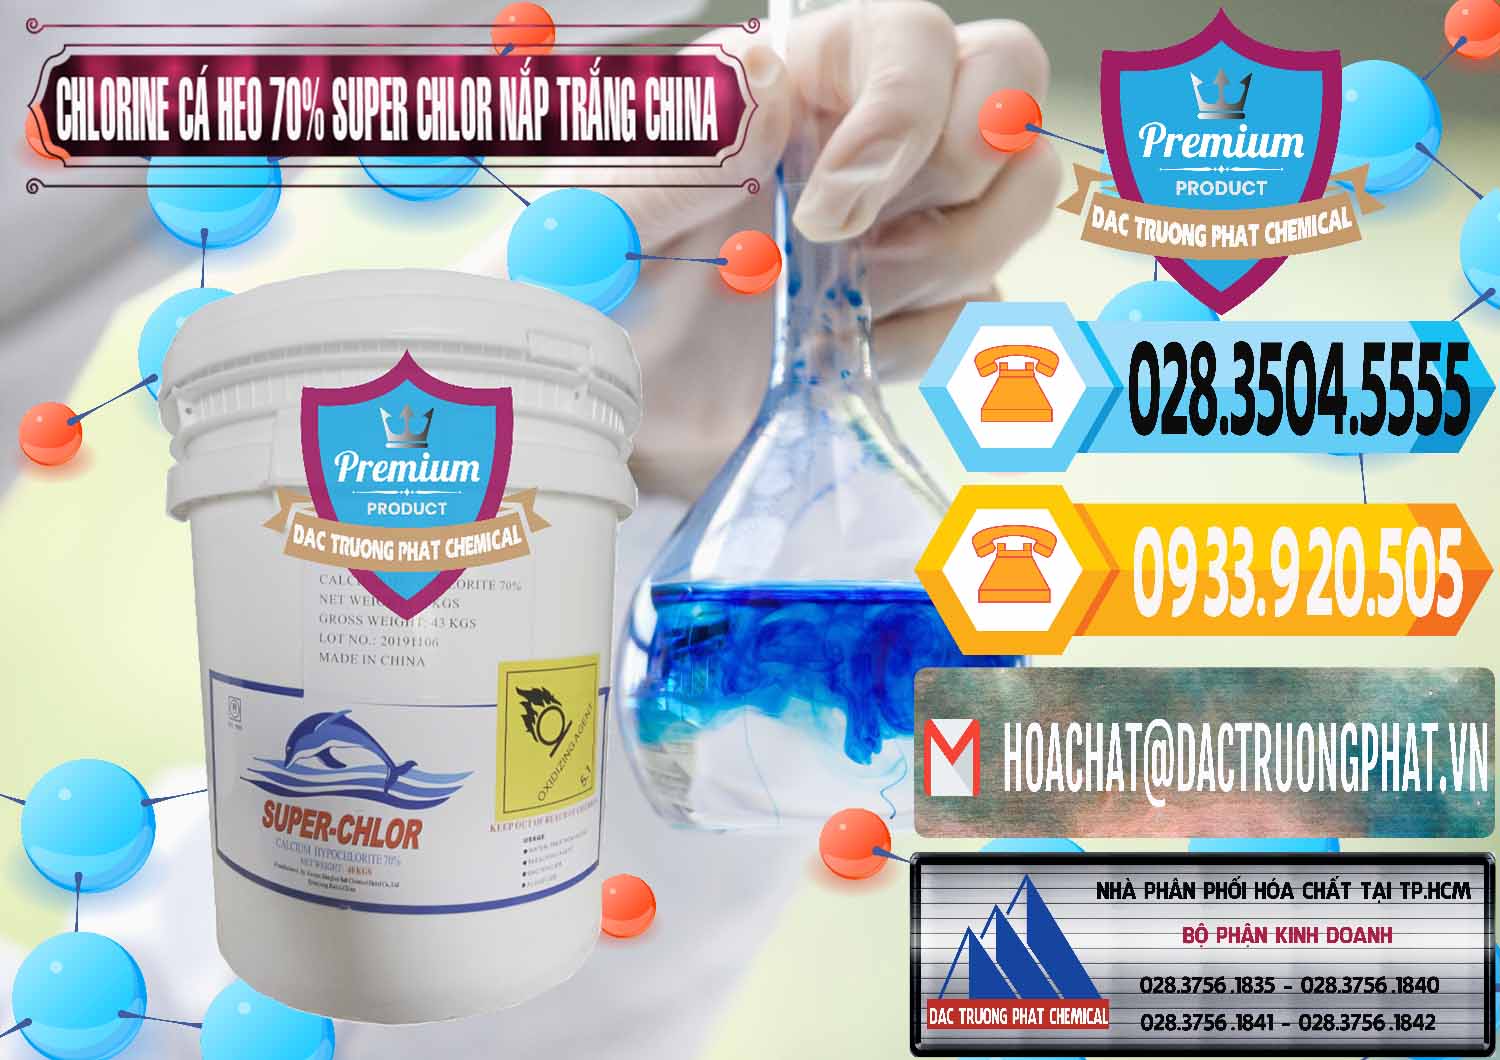 Cty chuyên nhập khẩu _ bán Clorin - Chlorine Cá Heo 70% Super Chlor Nắp Trắng Trung Quốc China - 0240 - Nhà phân phối và bán hóa chất tại TP.HCM - hoachattayrua.net